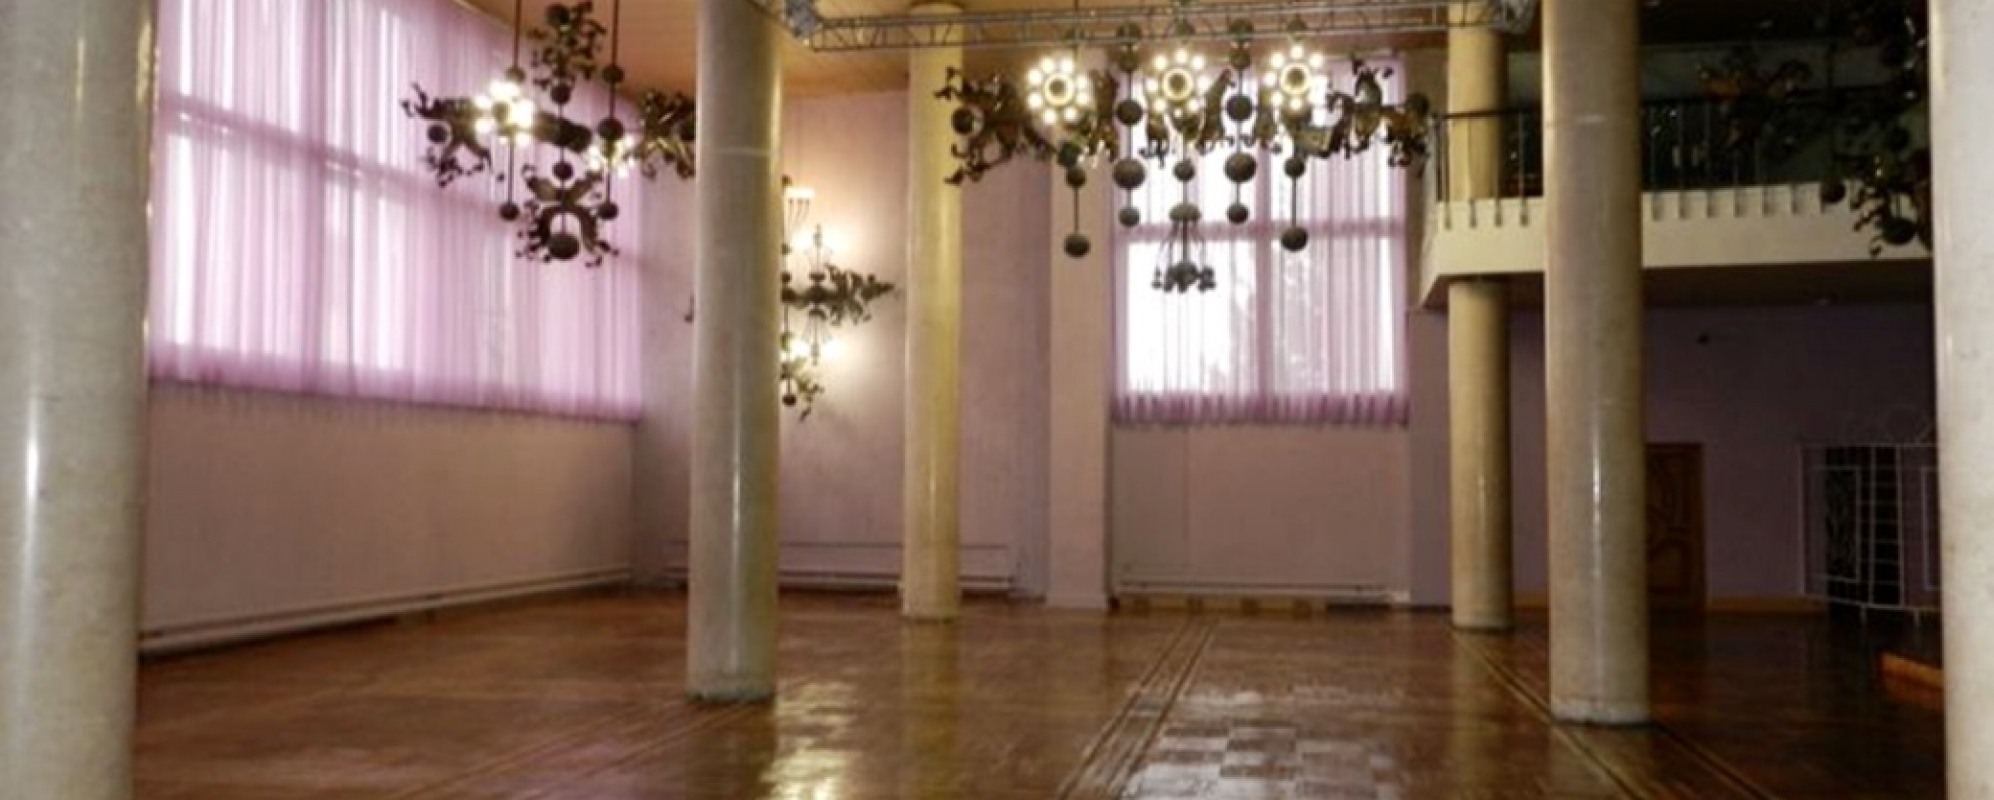 Фотографии танцевального зала Колонный зал КДЦ Металлург